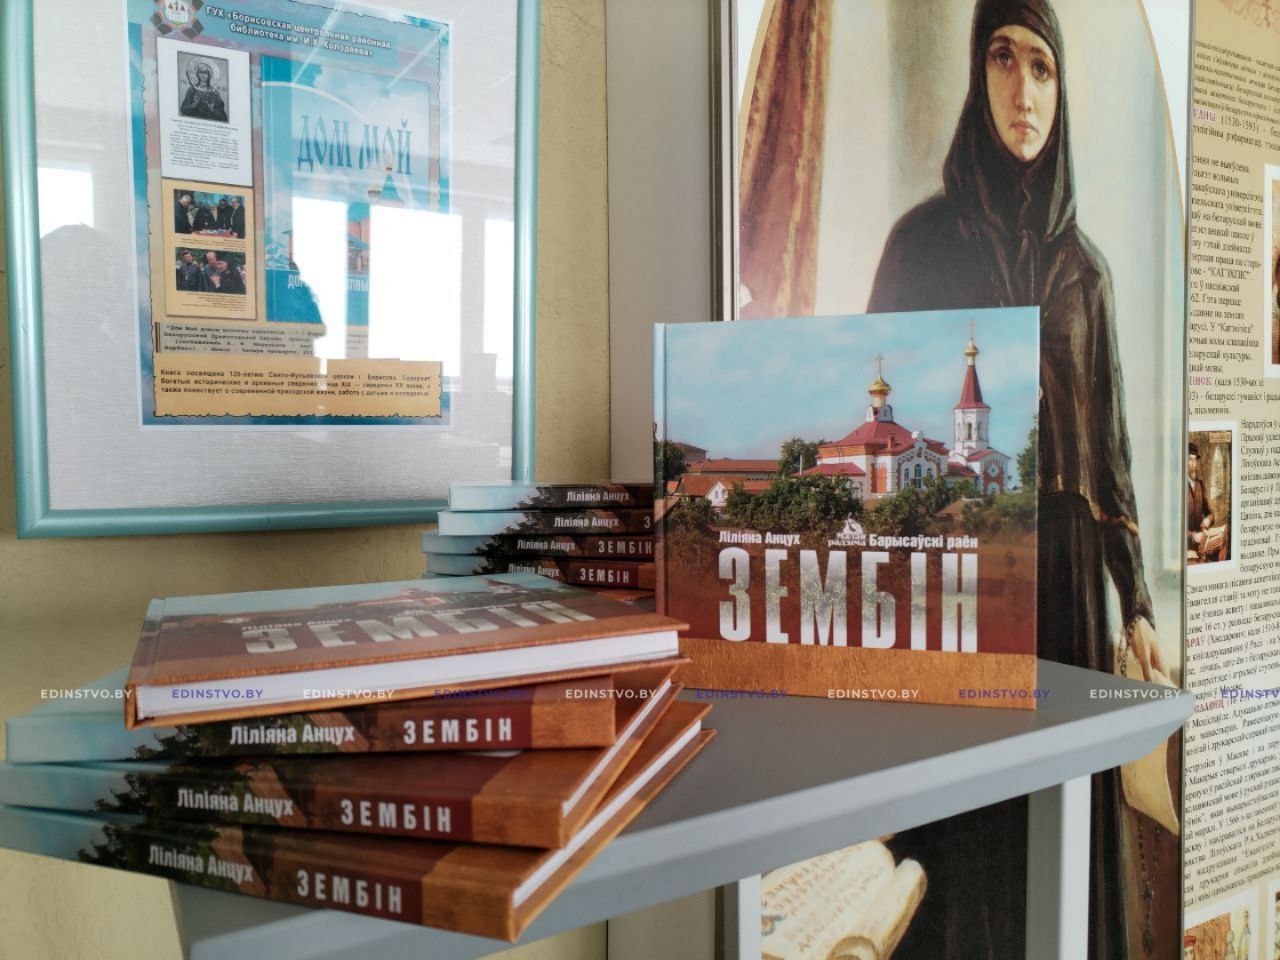 Через книги – к духовности. В Борисовской центральной районной библиотеке прошло мероприятие, посвященное Дню православной книги